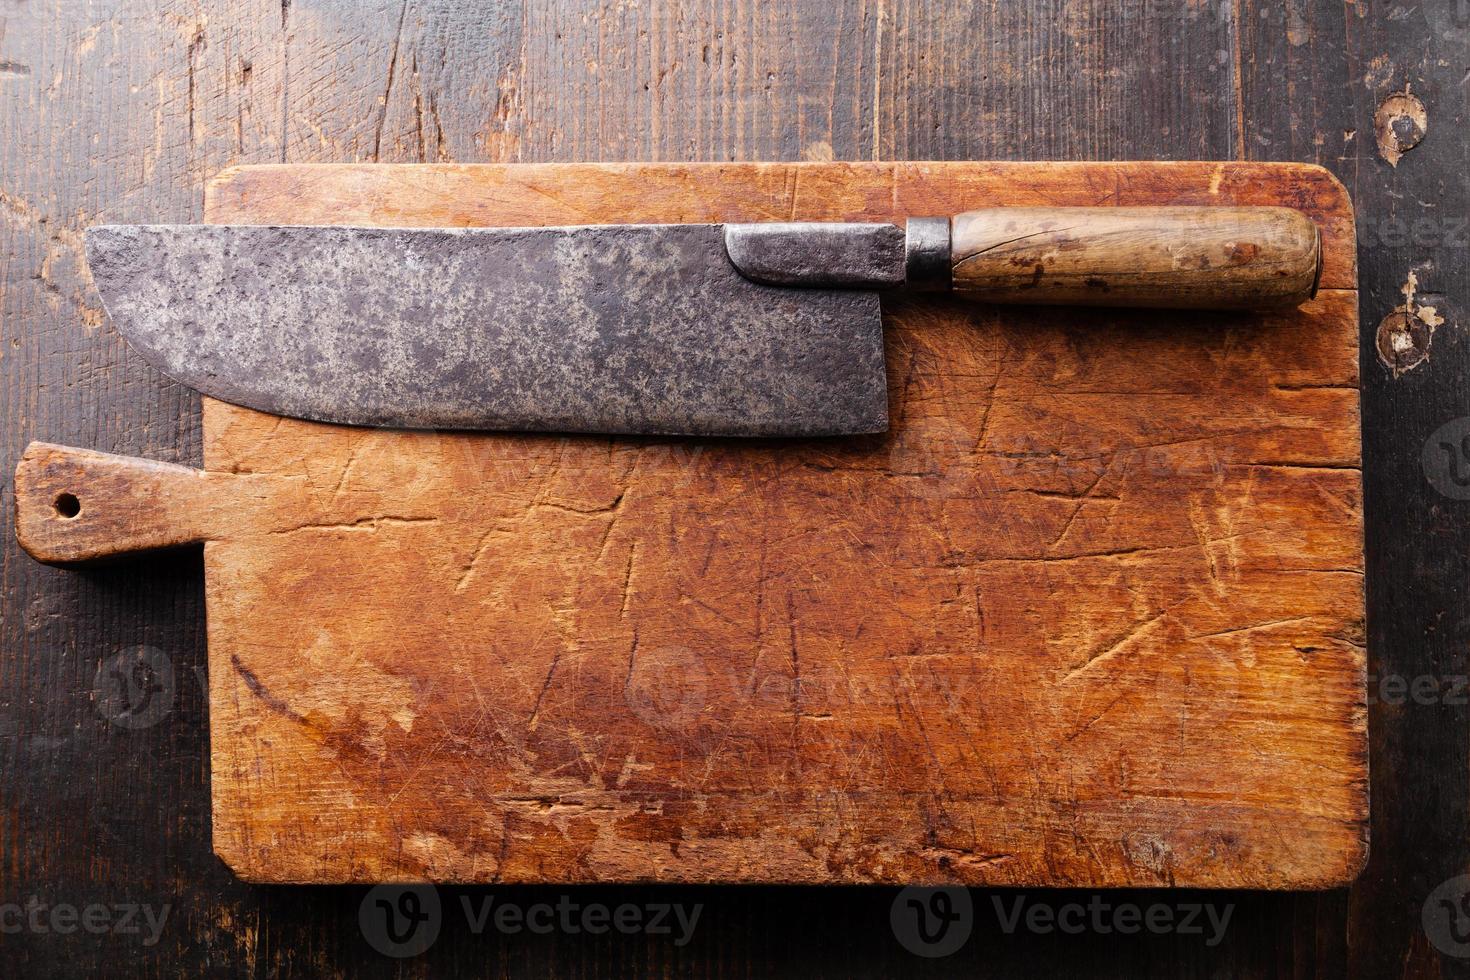 cuchara persecucion Absolutamente tabla de cortar y cuchillo de carnicero 1320130 Foto de stock en Vecteezy